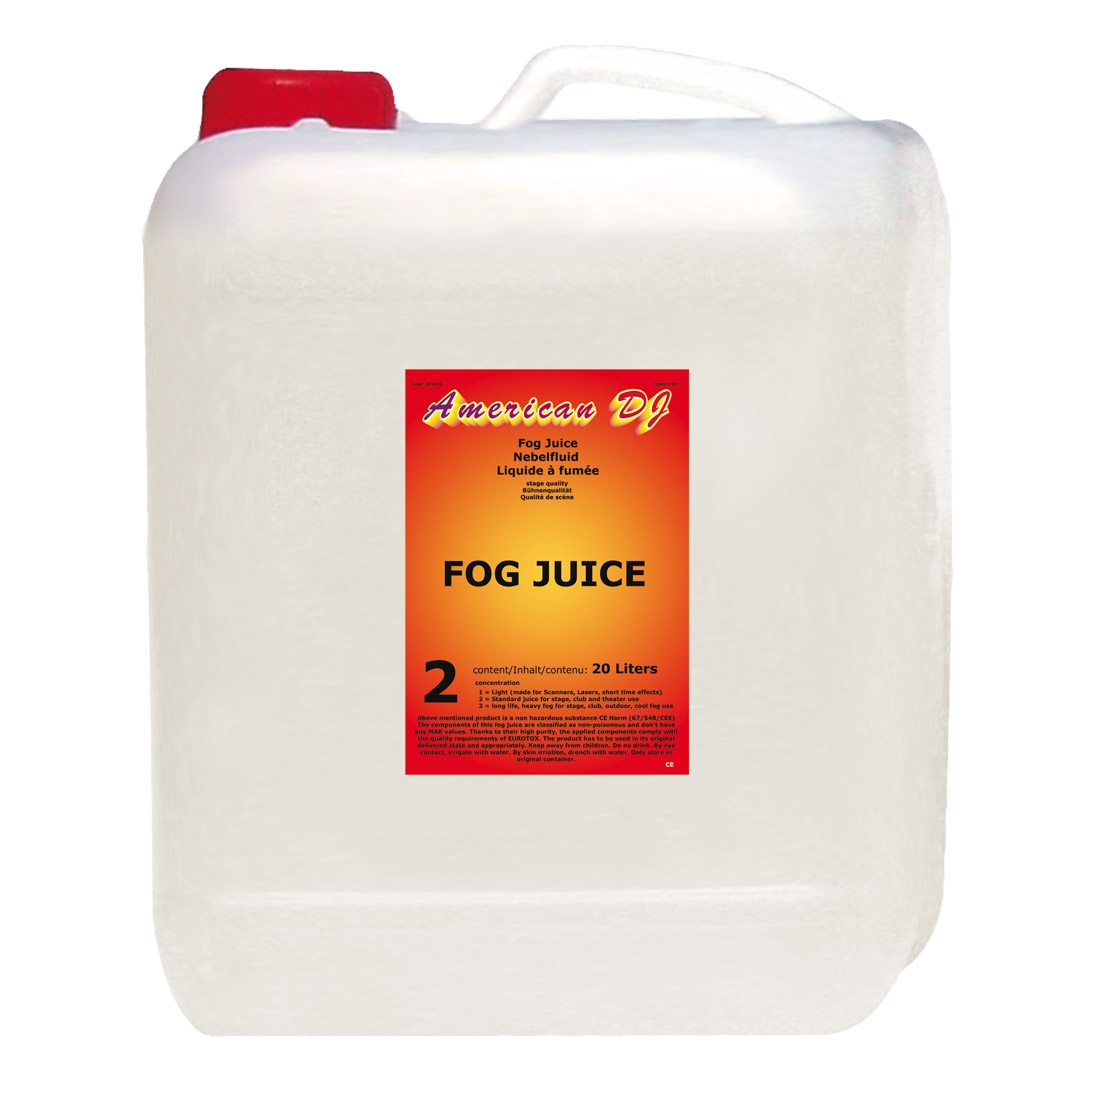 ADJ Fog juice 2 Medium 20 Liter